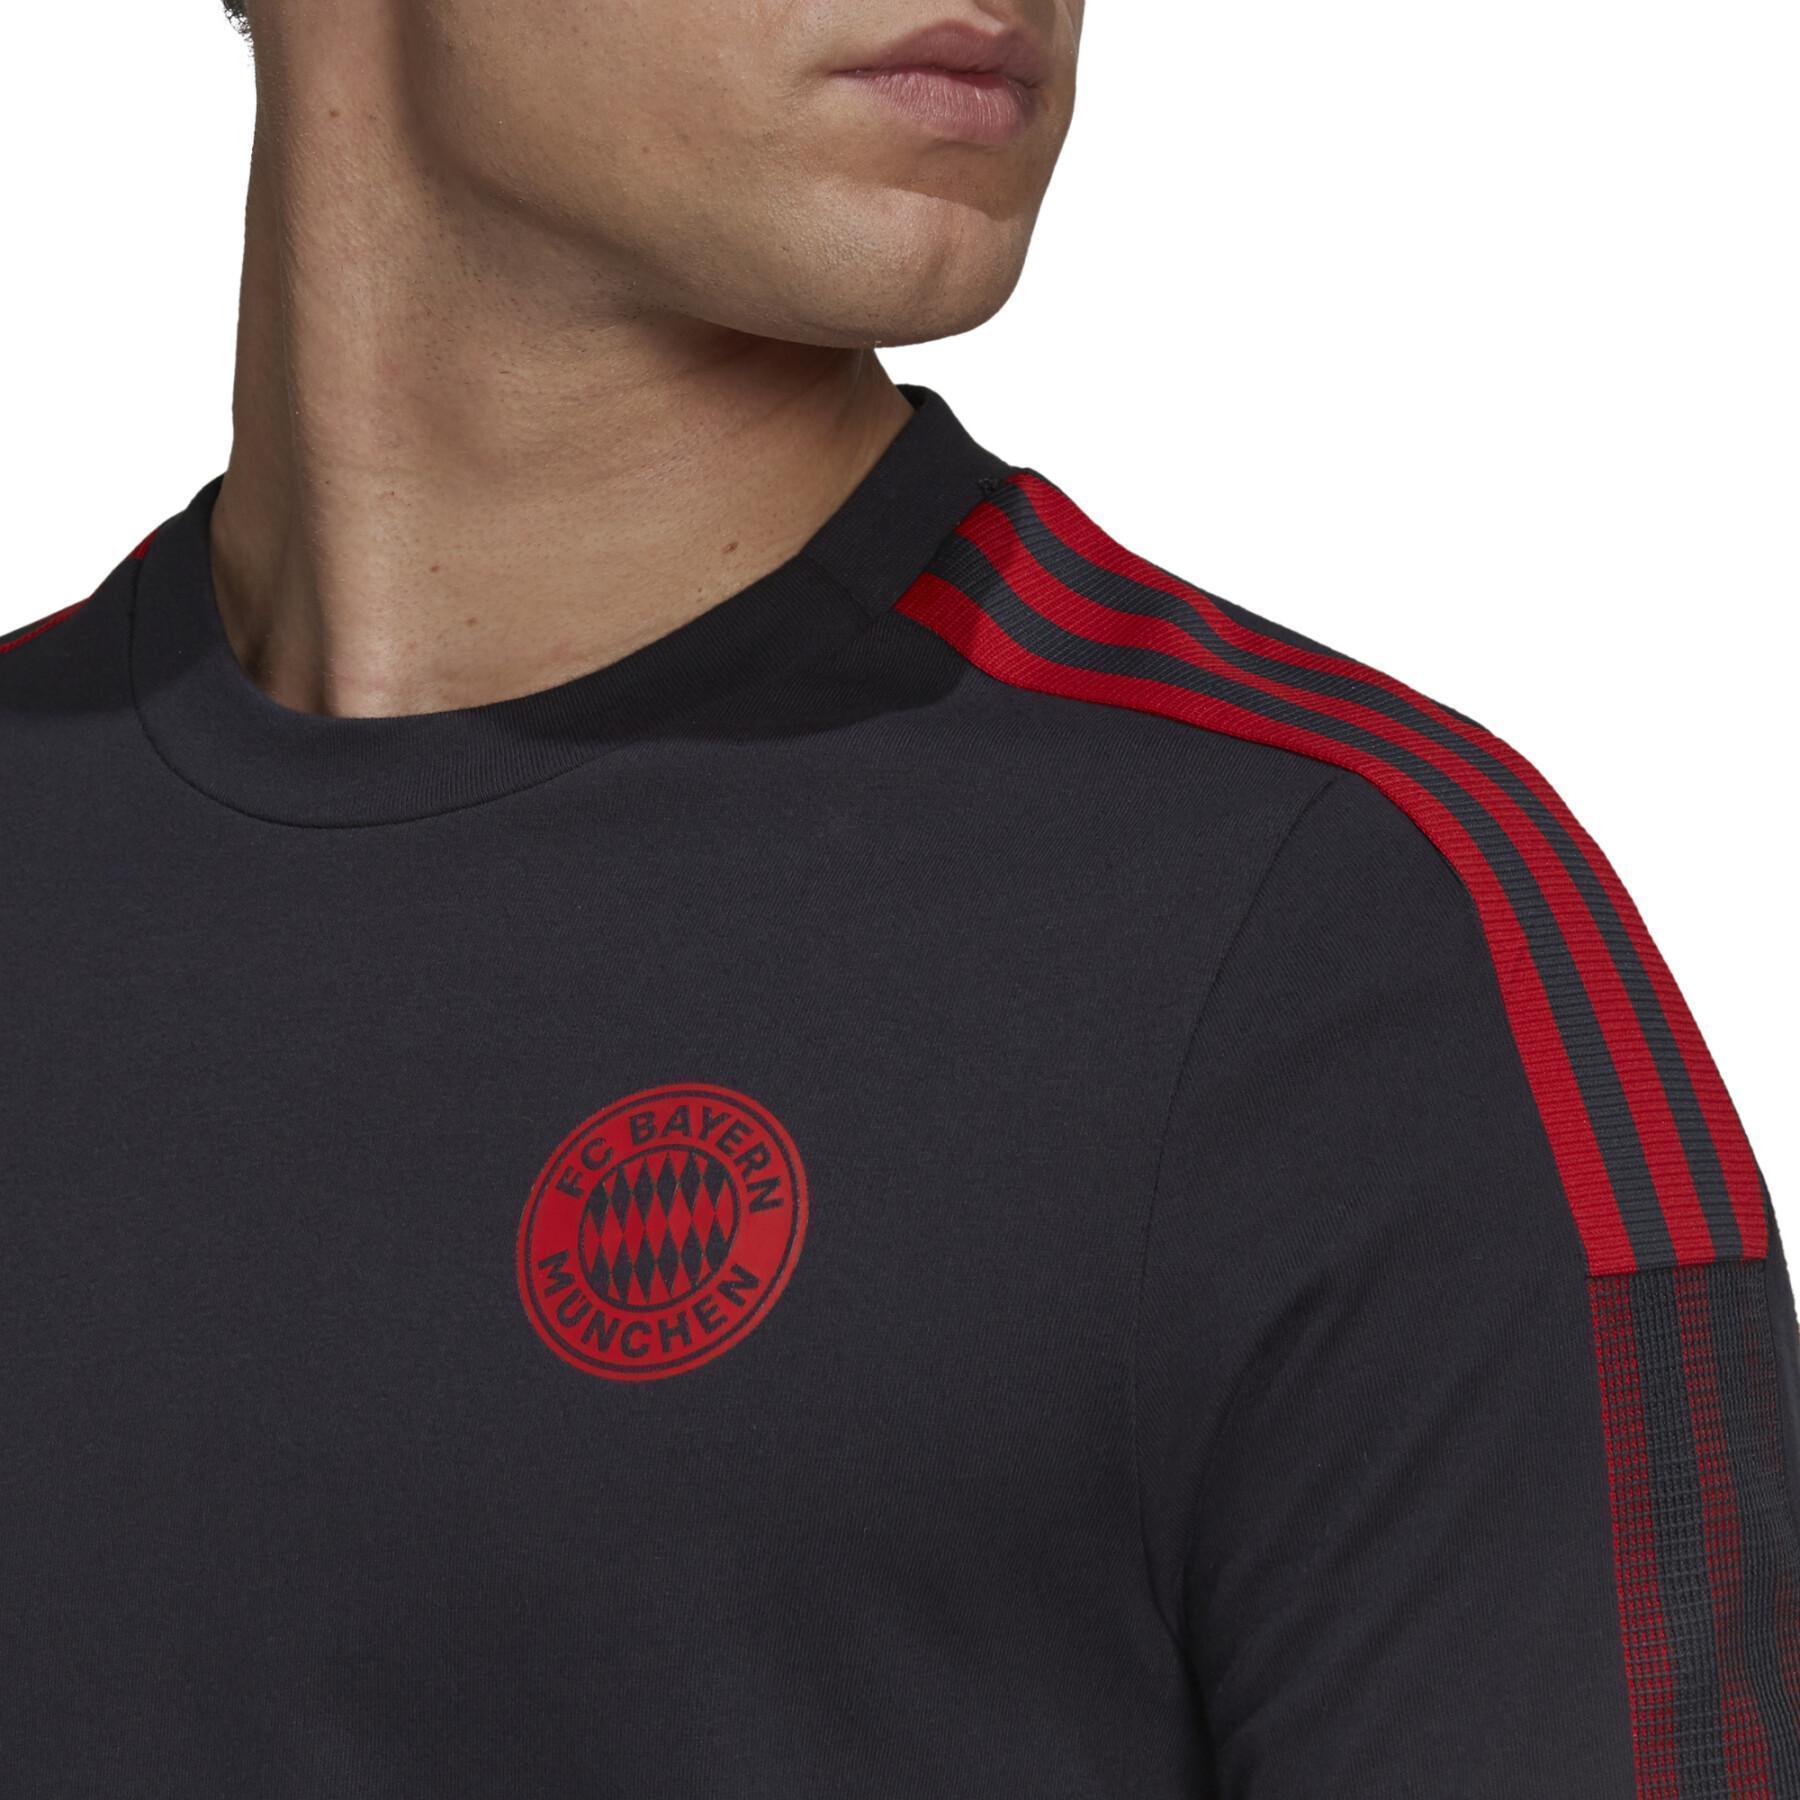 T-shirt fc Bayern Munich Tiro